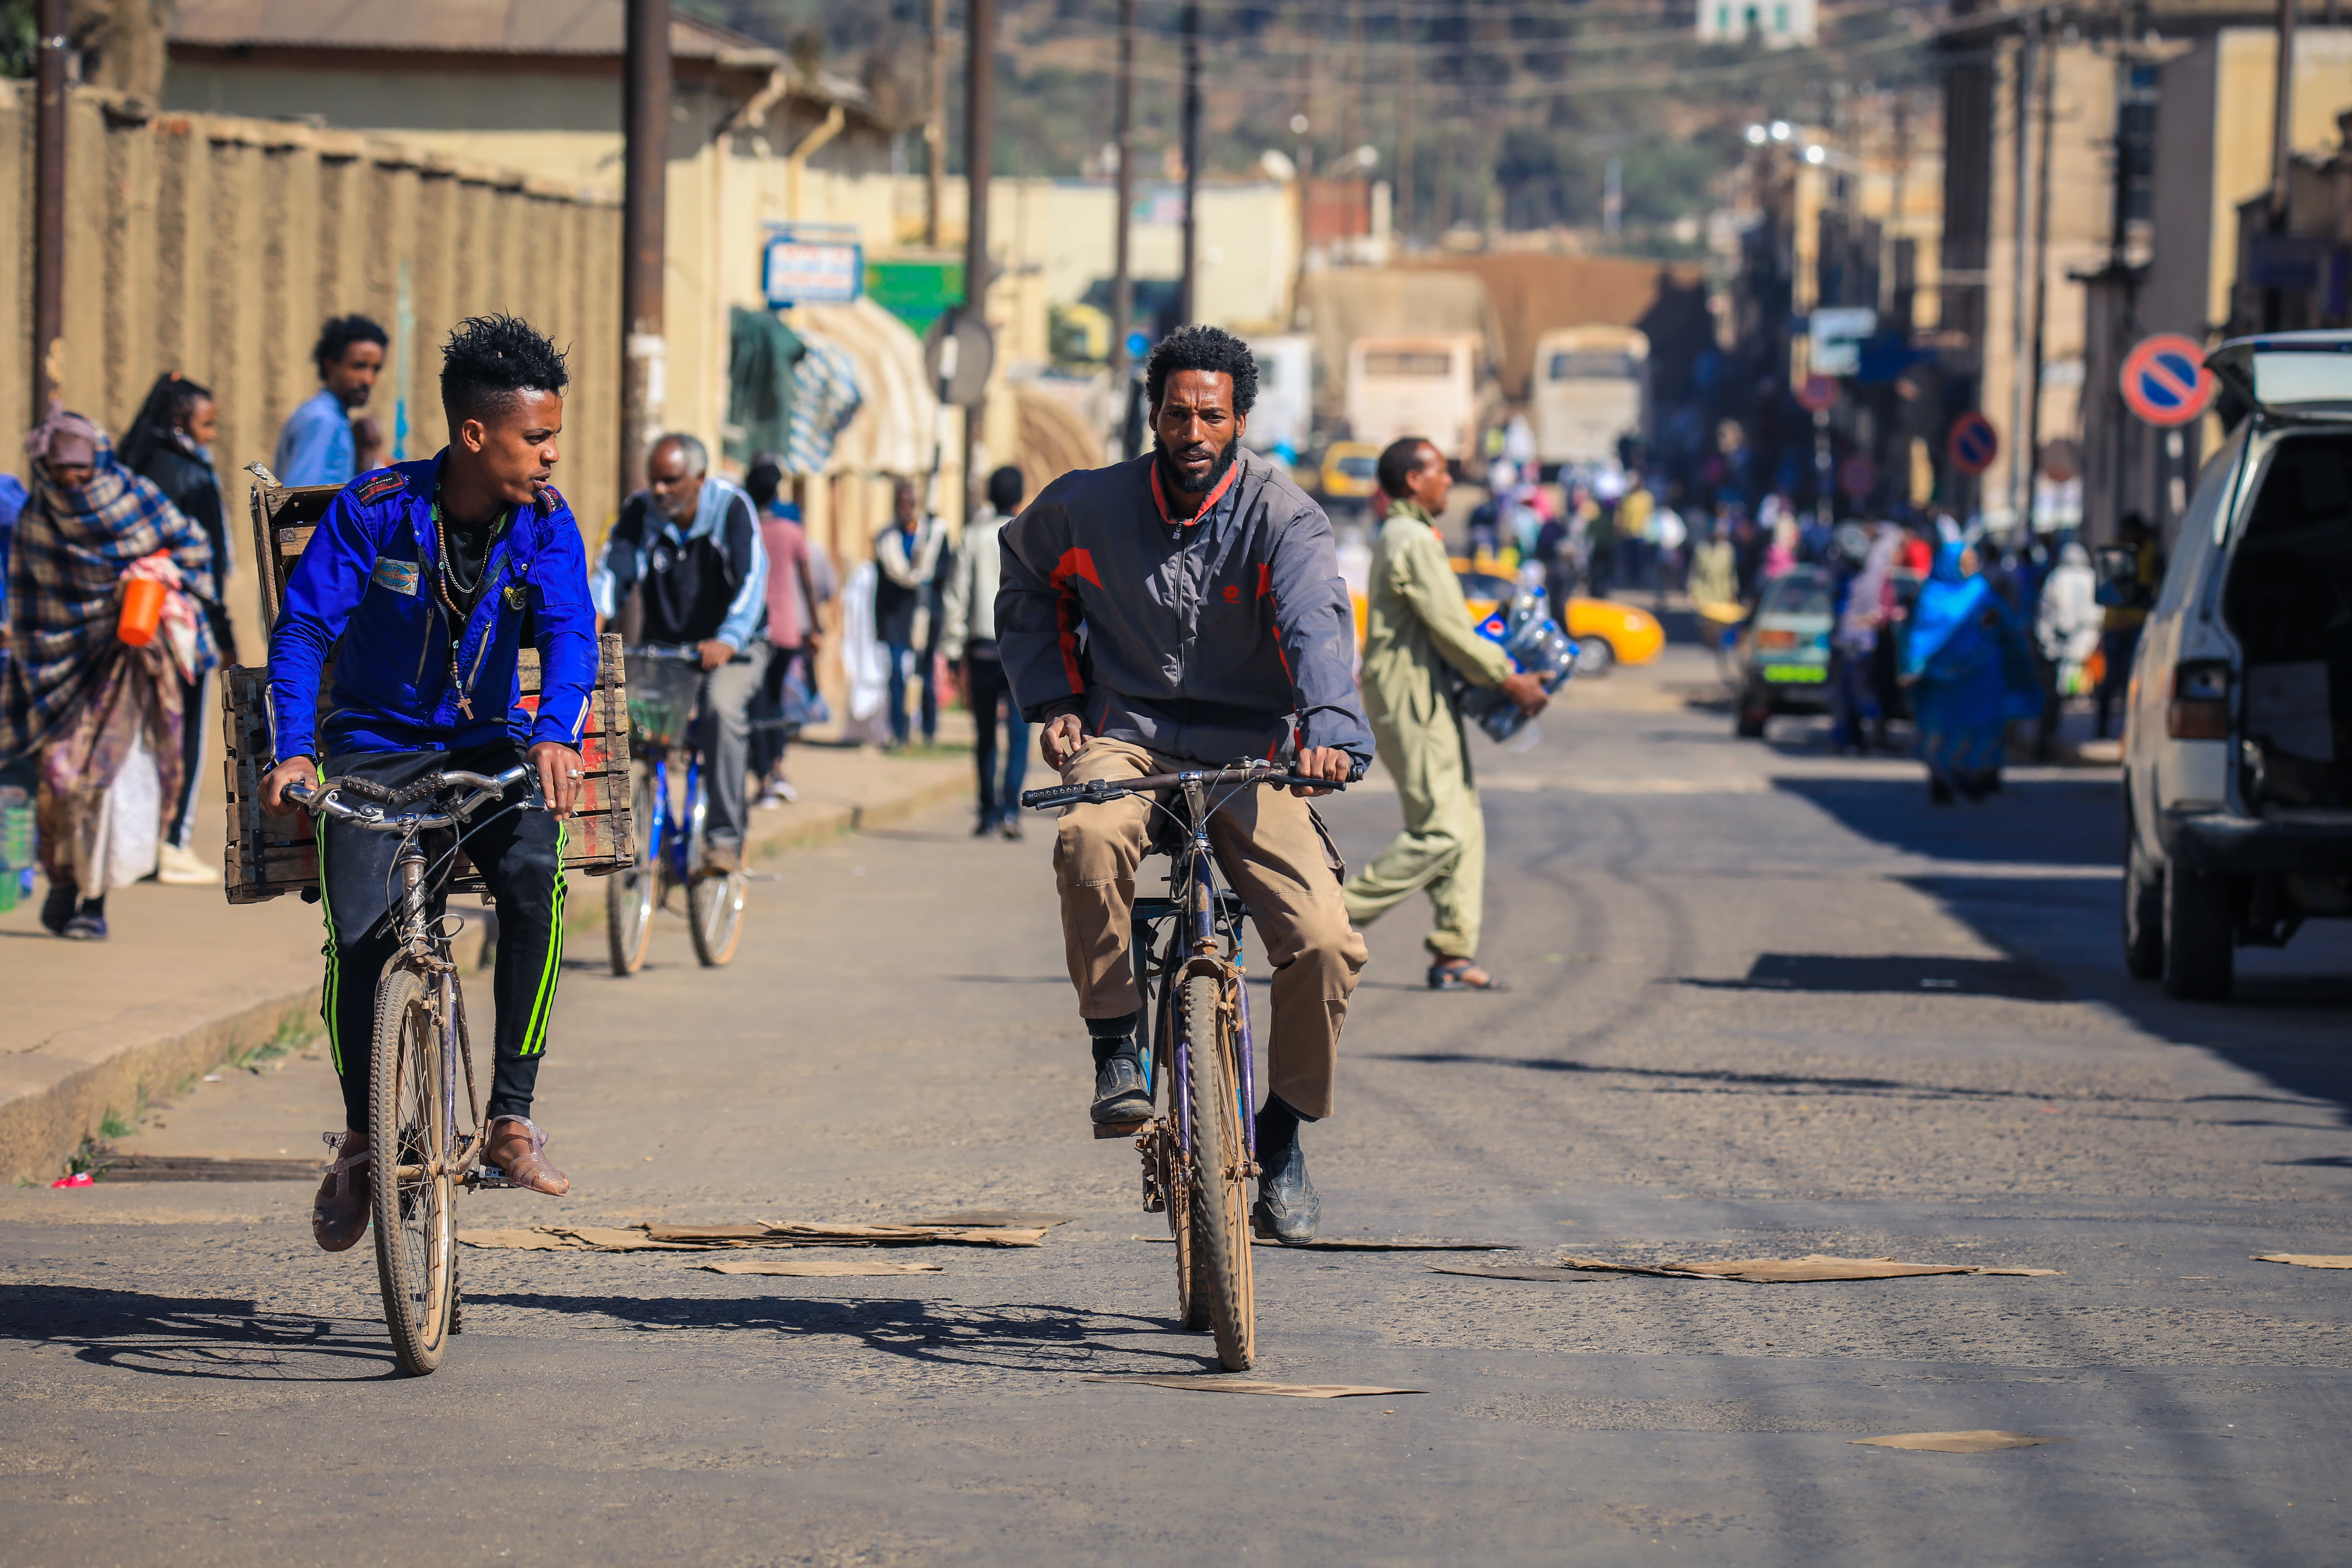 Asmara, Eritrea - November 02, 2019: Jonge mannen op de fiets in de hoofdstraat van Asmara